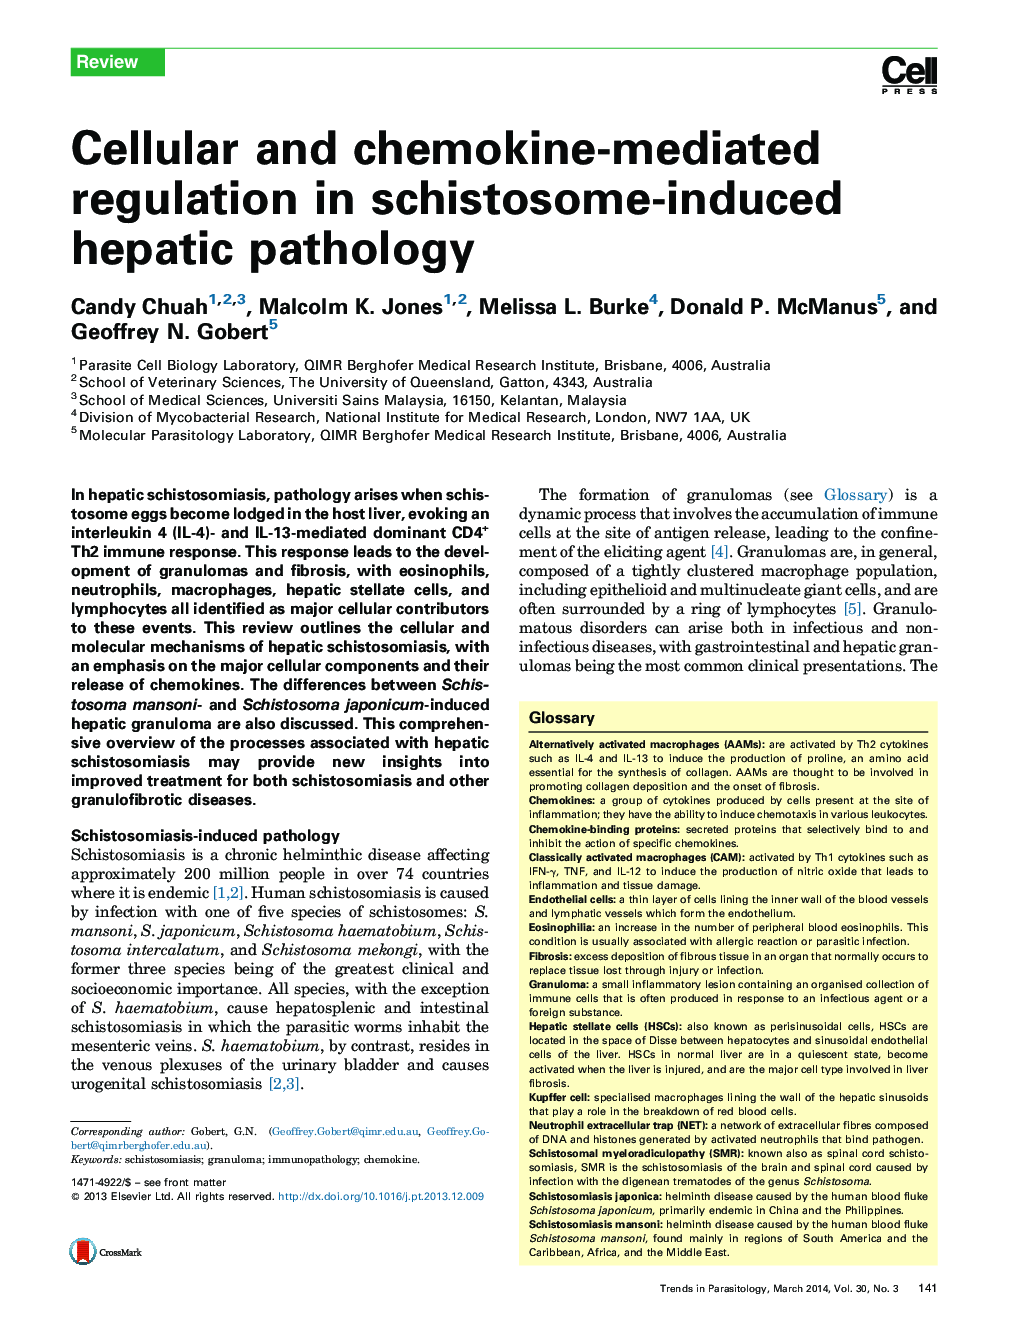 مقررات سلولی و شیمیایی به دلیل آسیب شناسی کبدی ناشی از شیستوزوم 